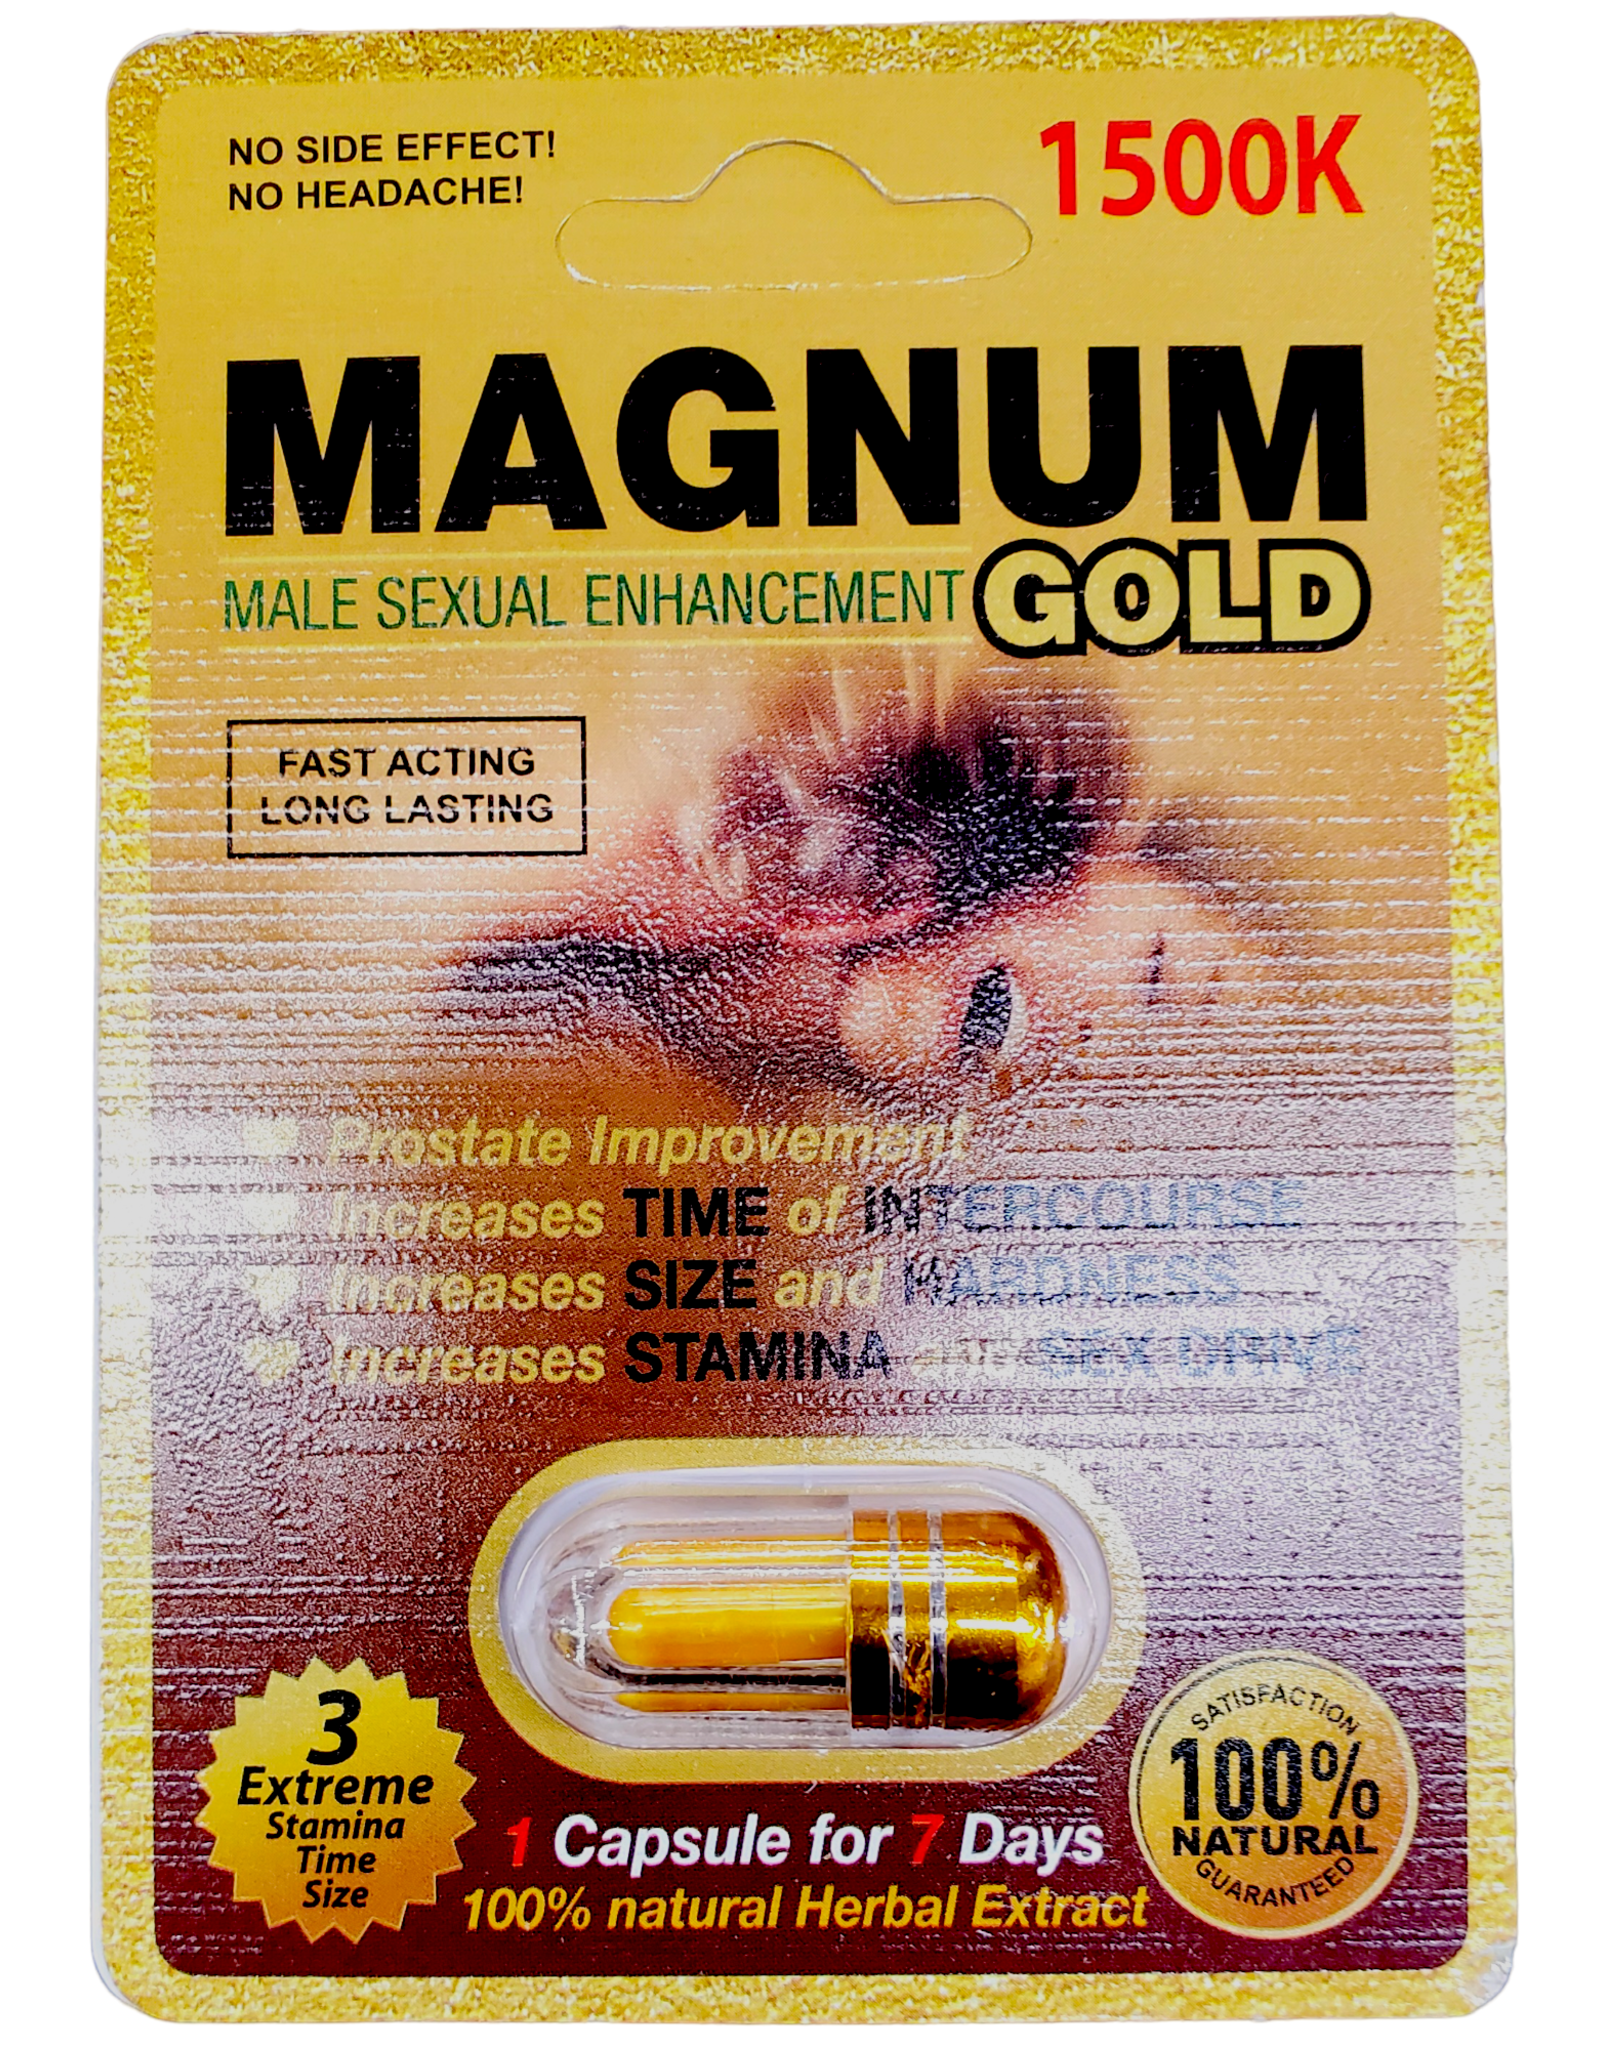 Magnum 1500K Gold Single